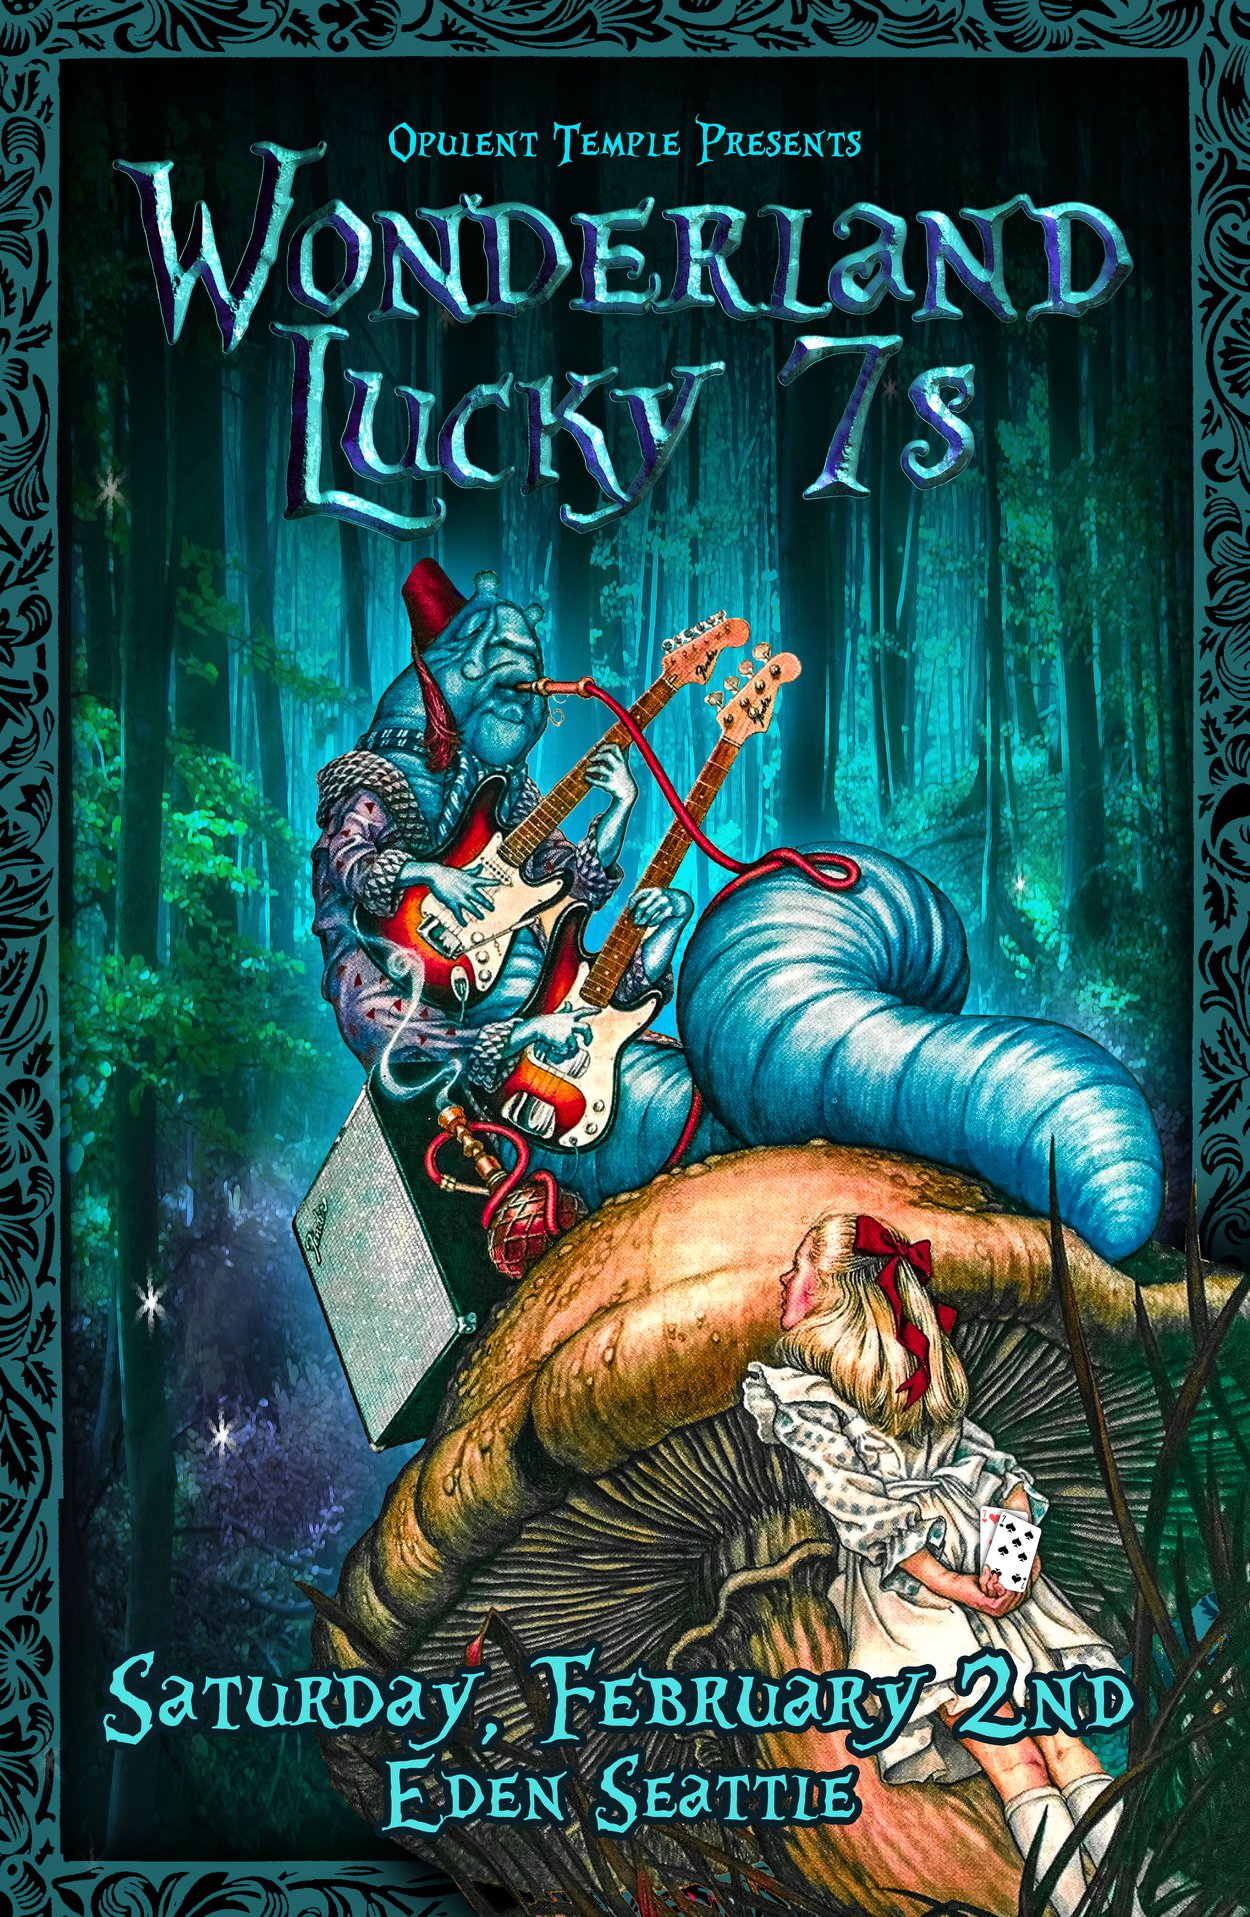 Opulent Temple Seattle’s Wonderland: Lucky 7’s